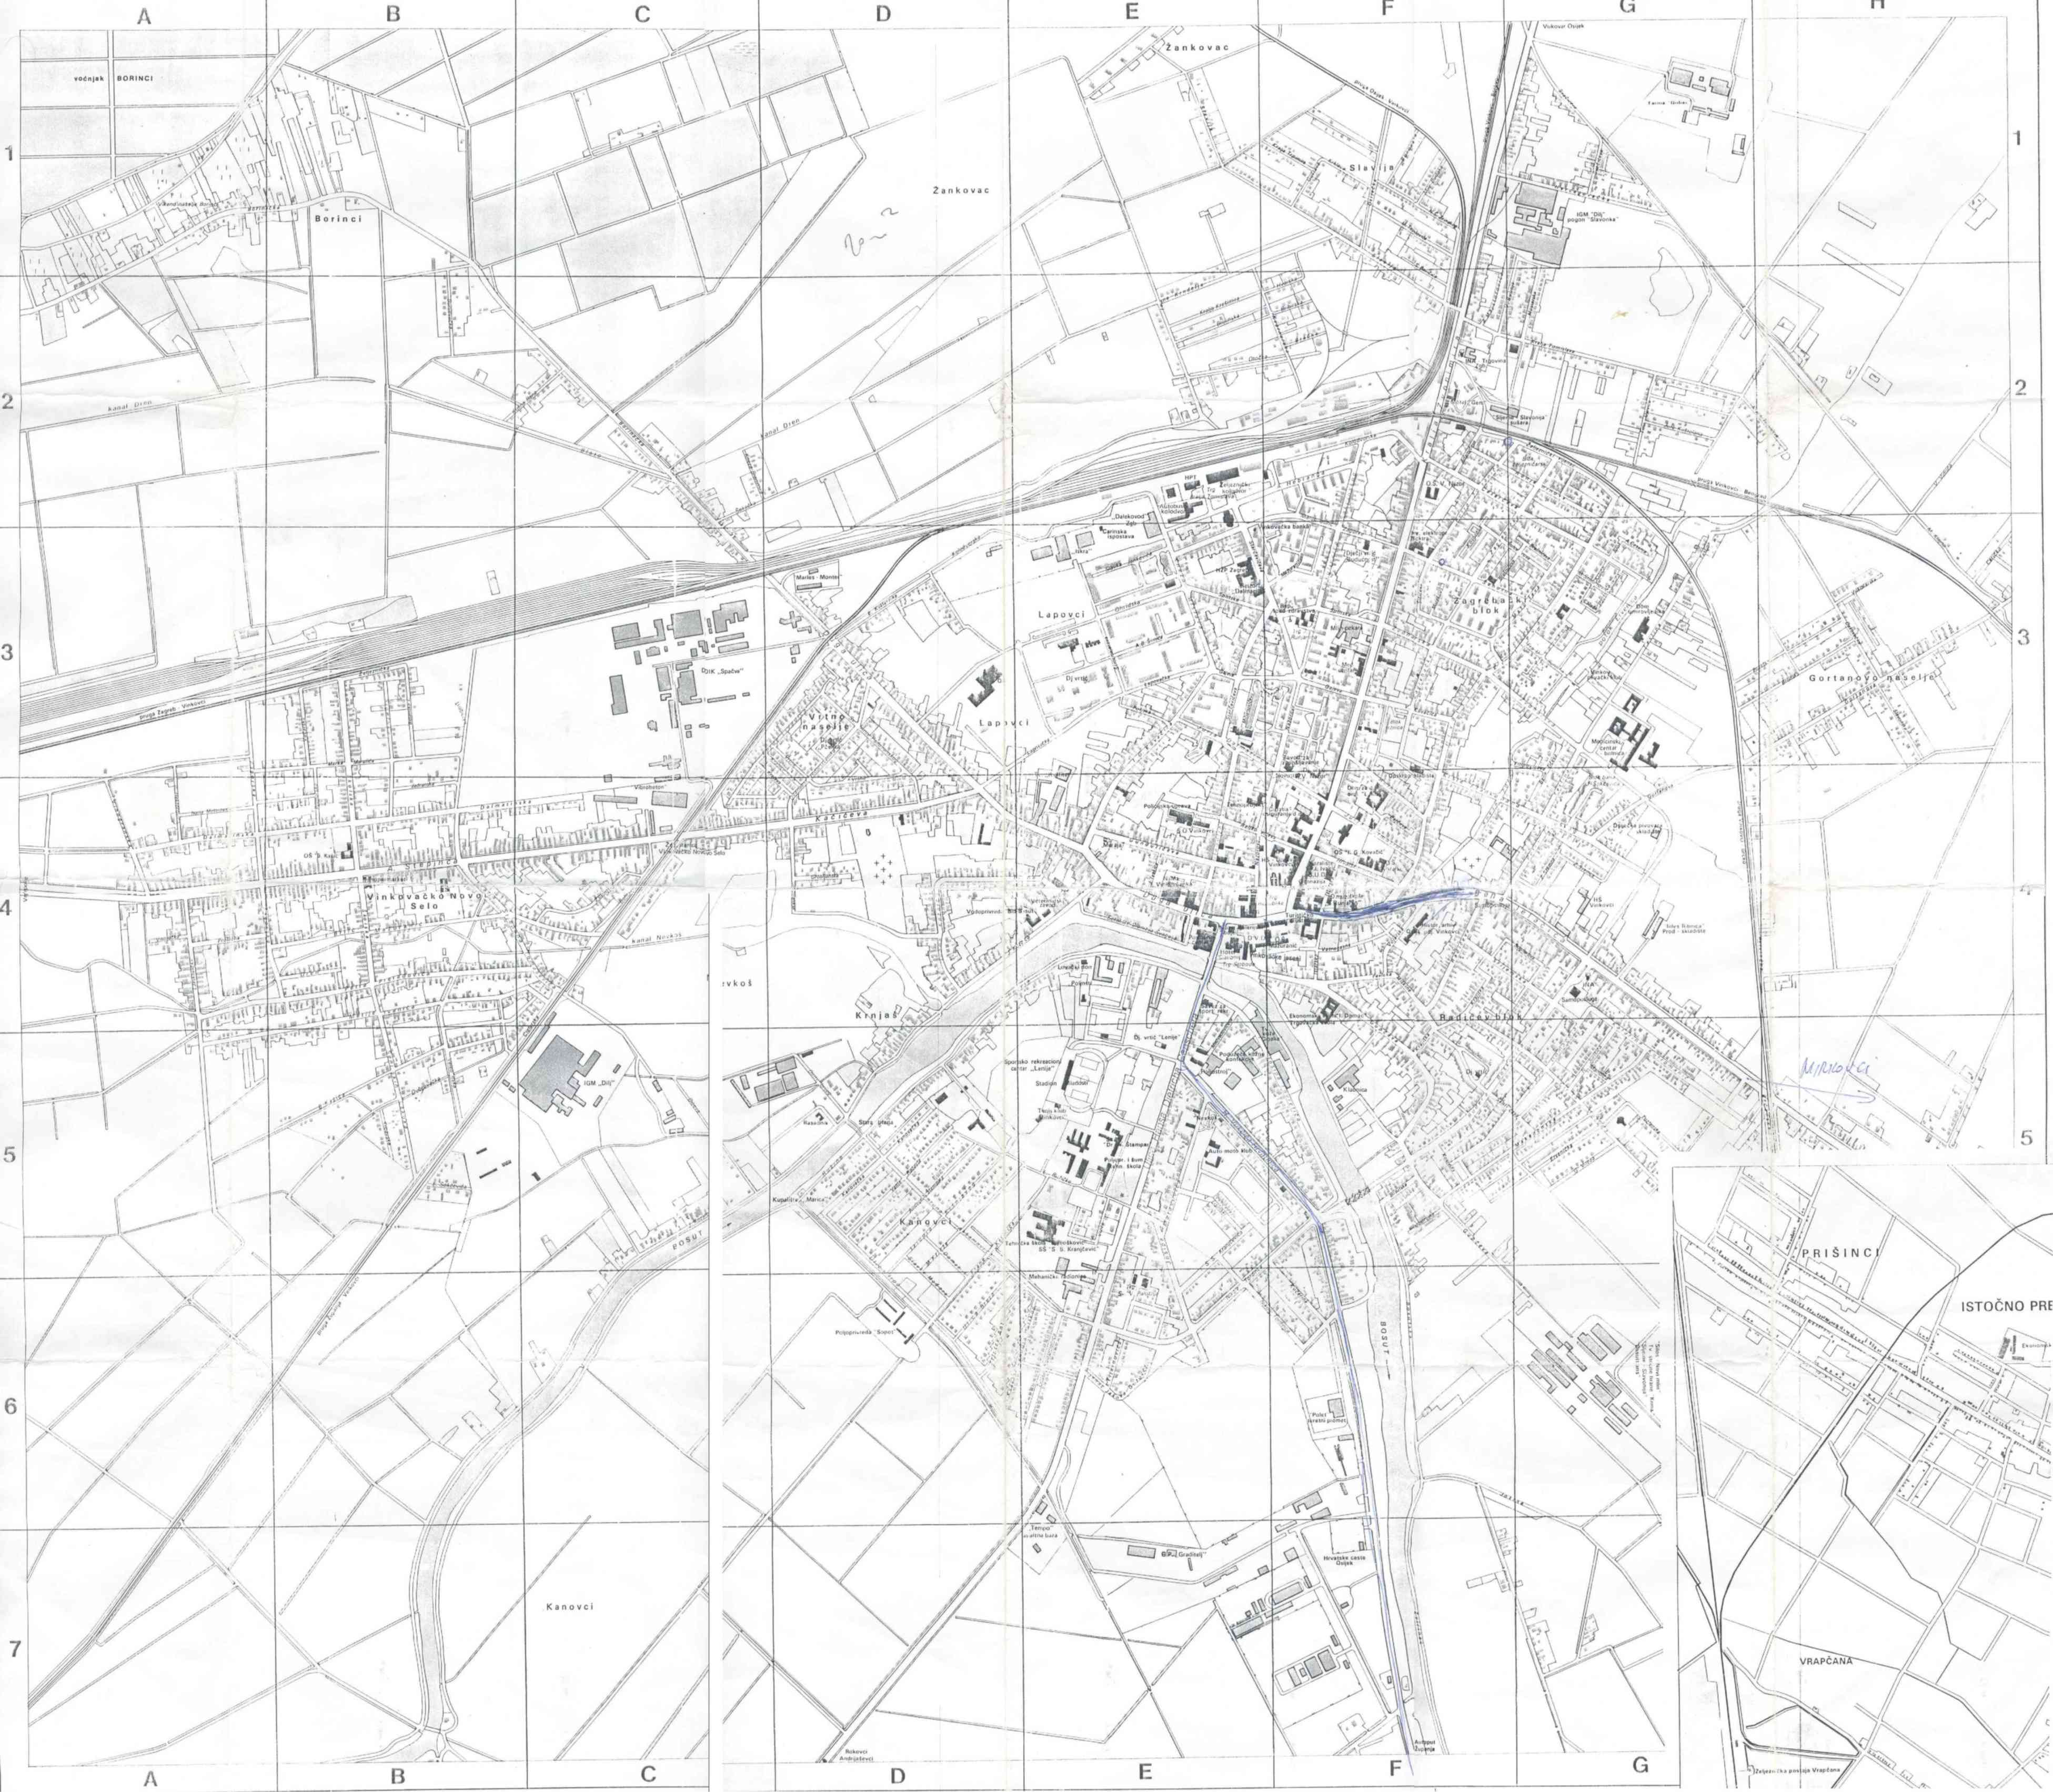 satelitska karta zagreba i okolice Planovi hrvatskih gradova satelitska karta zagreba i okolice